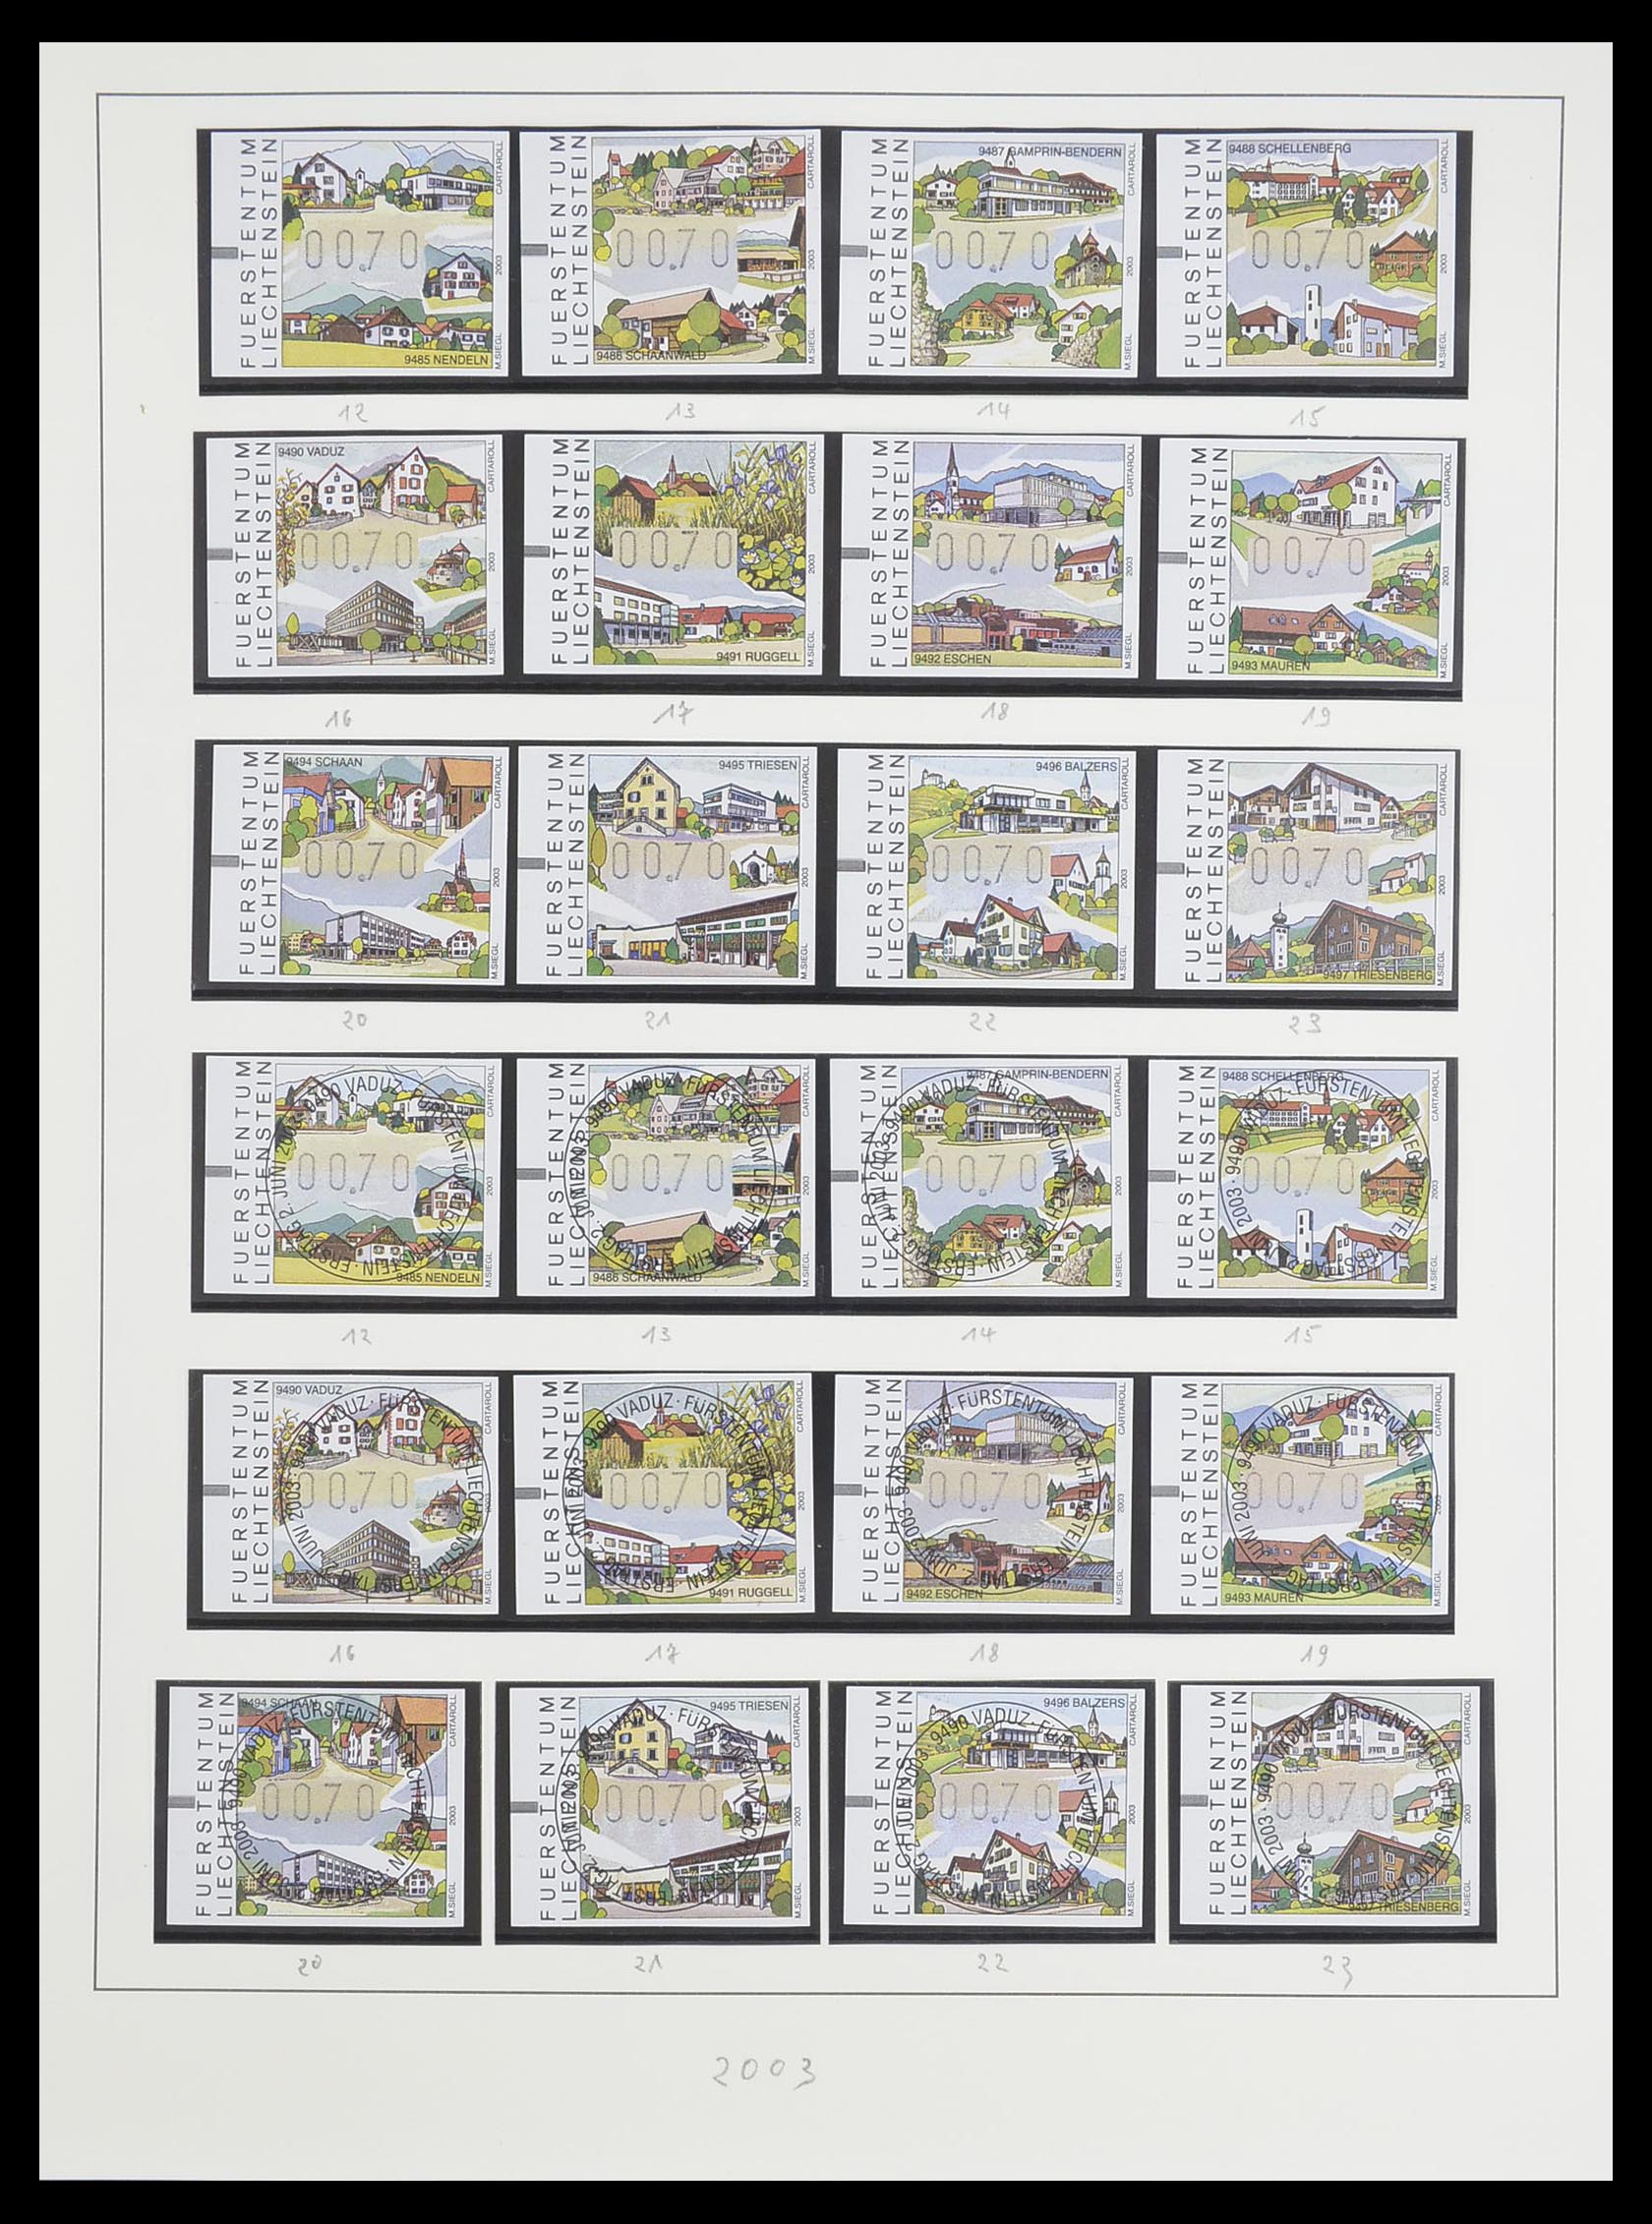 33493 185 - Stamp collection 33493 Liechtenstein 1912-2008.